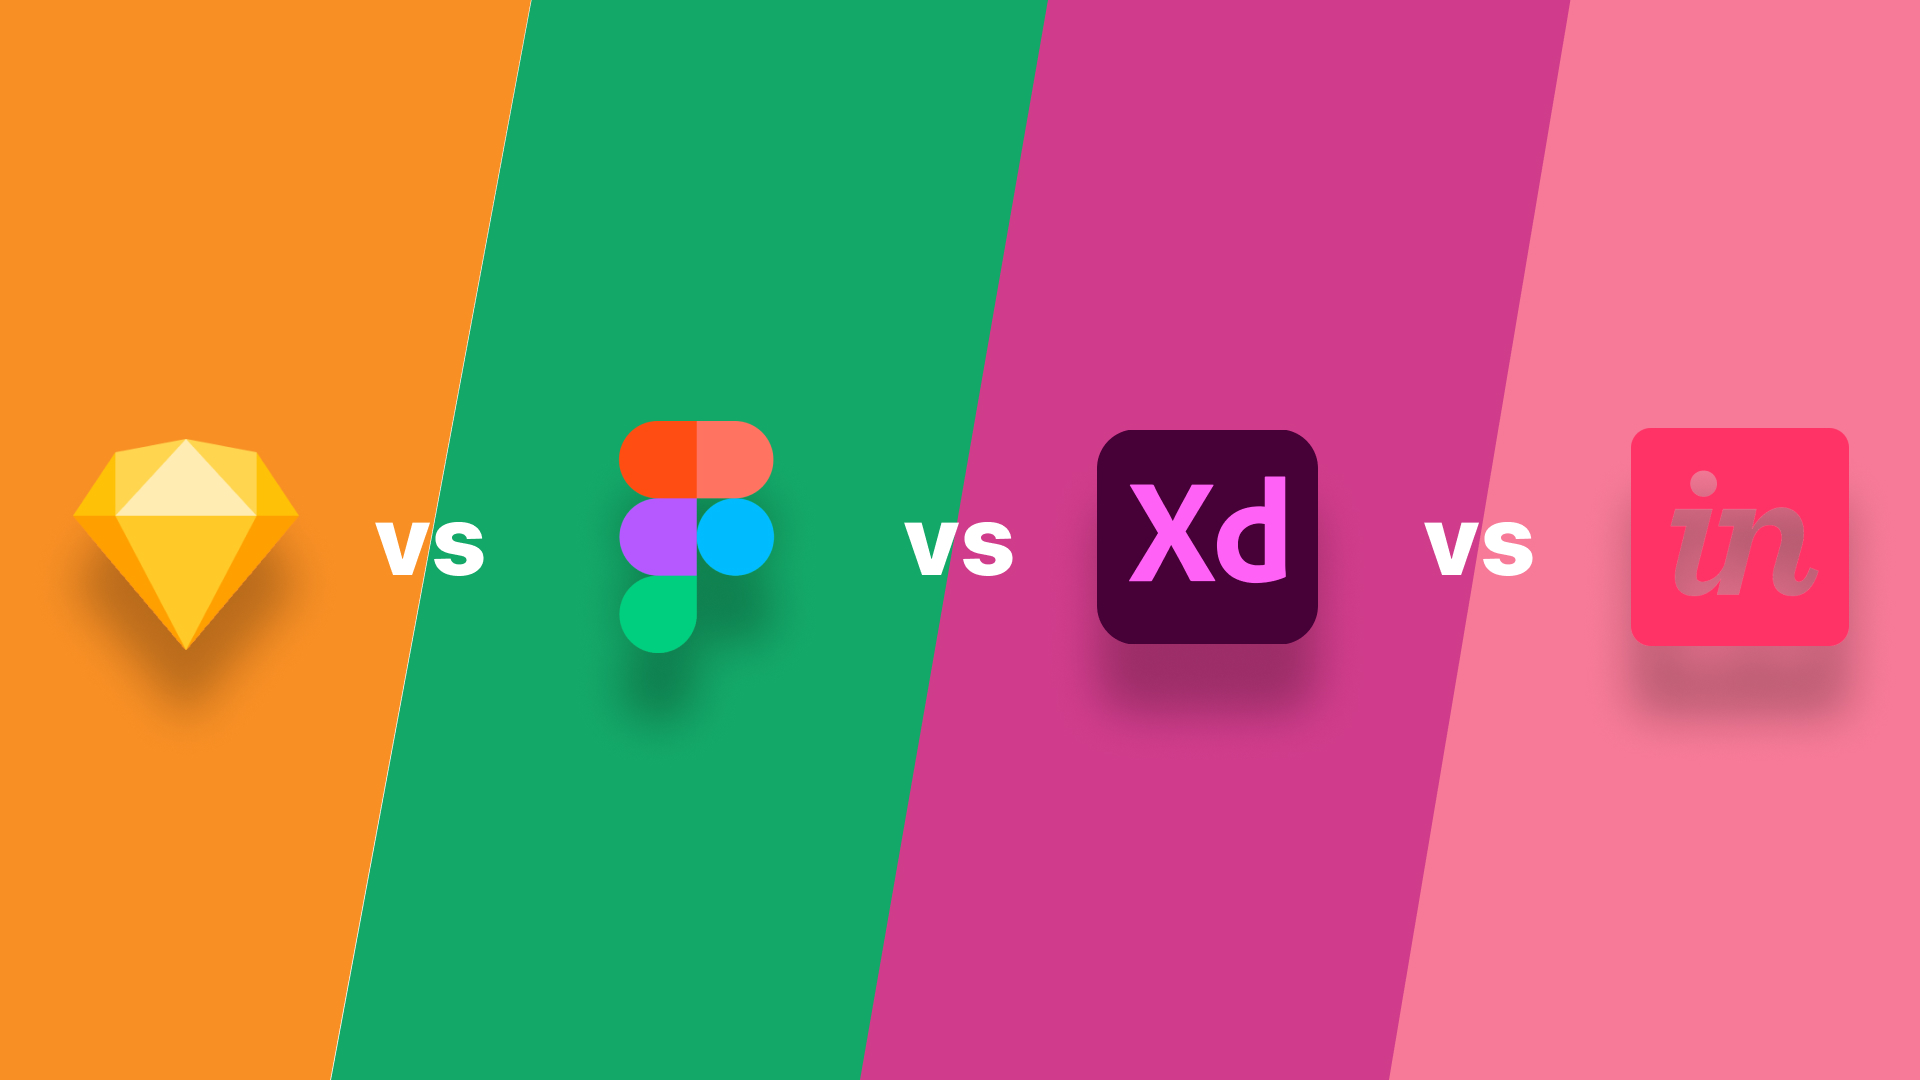 Adobe XD vs Sketch vs Figma vs InVision